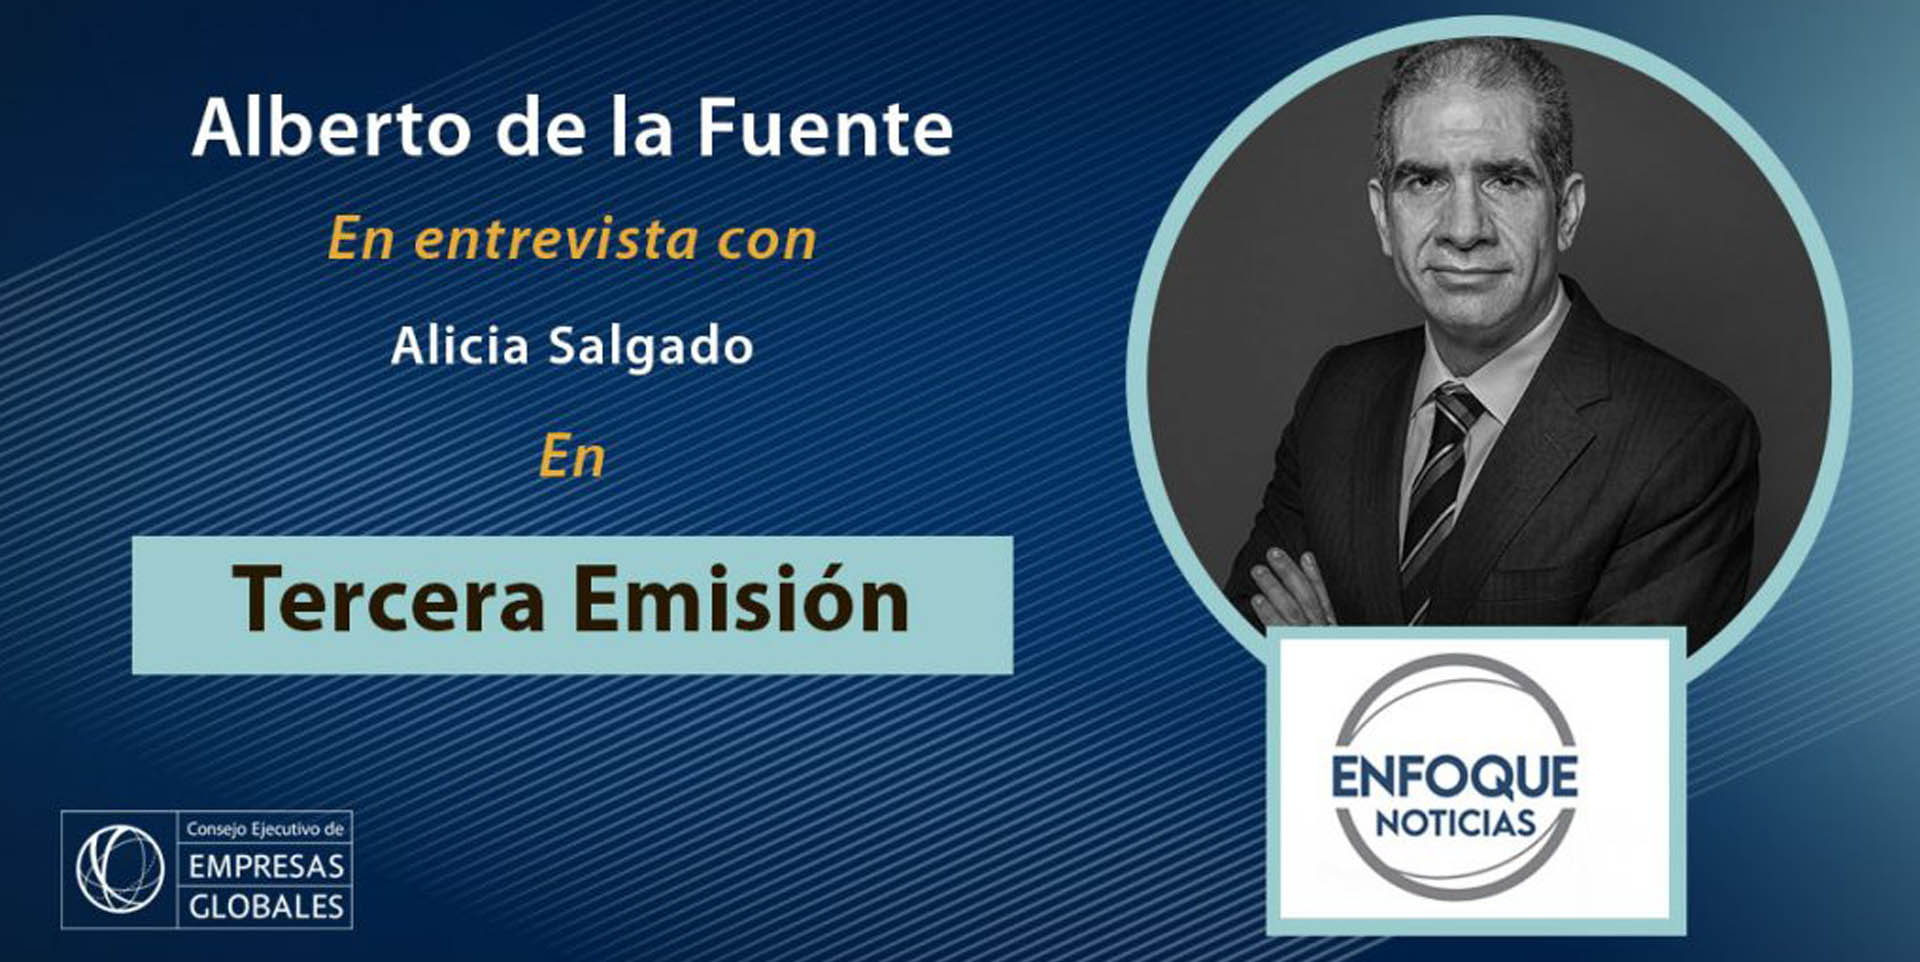 Alberto de la Fuente, Presidente del CEEG en Enfoque Noticias